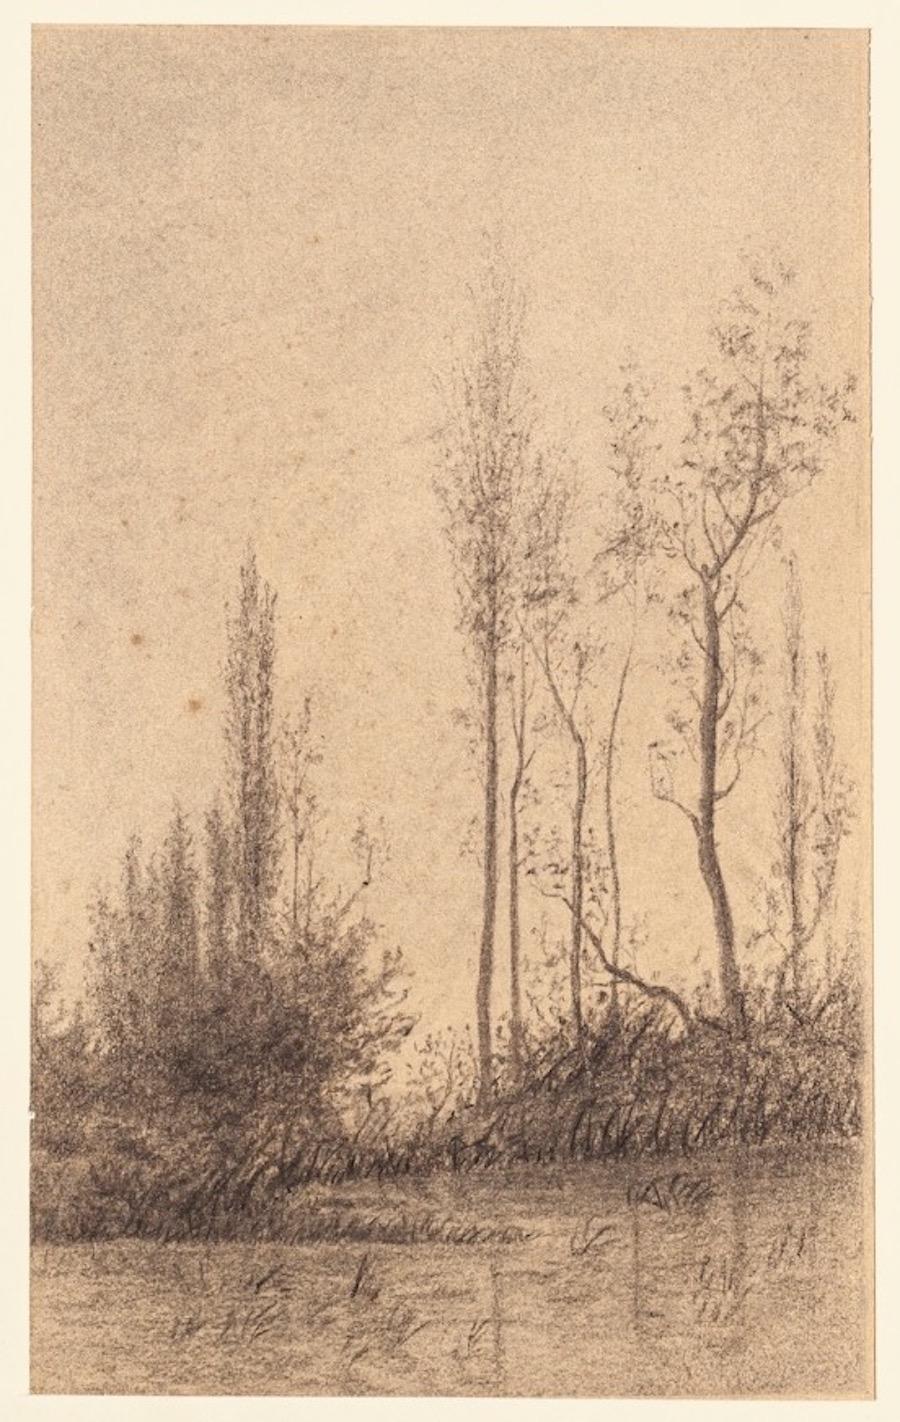 Emile-Louis Minet Landscape Art - Landscape - Charcoal and Pencil by E.-L. Minet - 1919